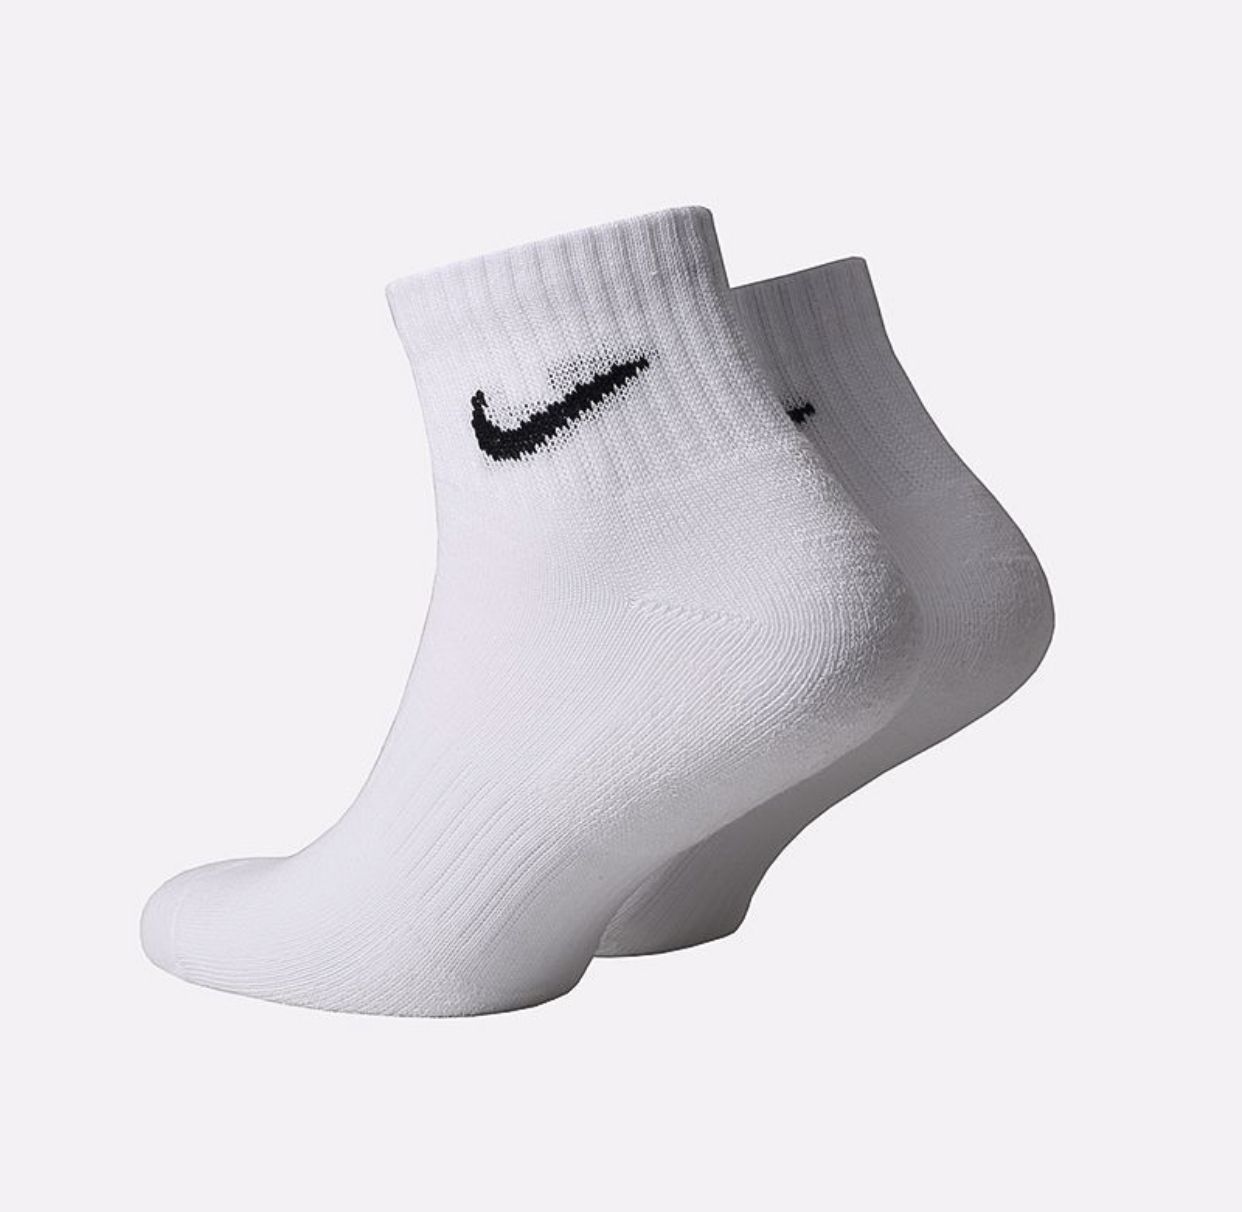 Носки Nike everyday